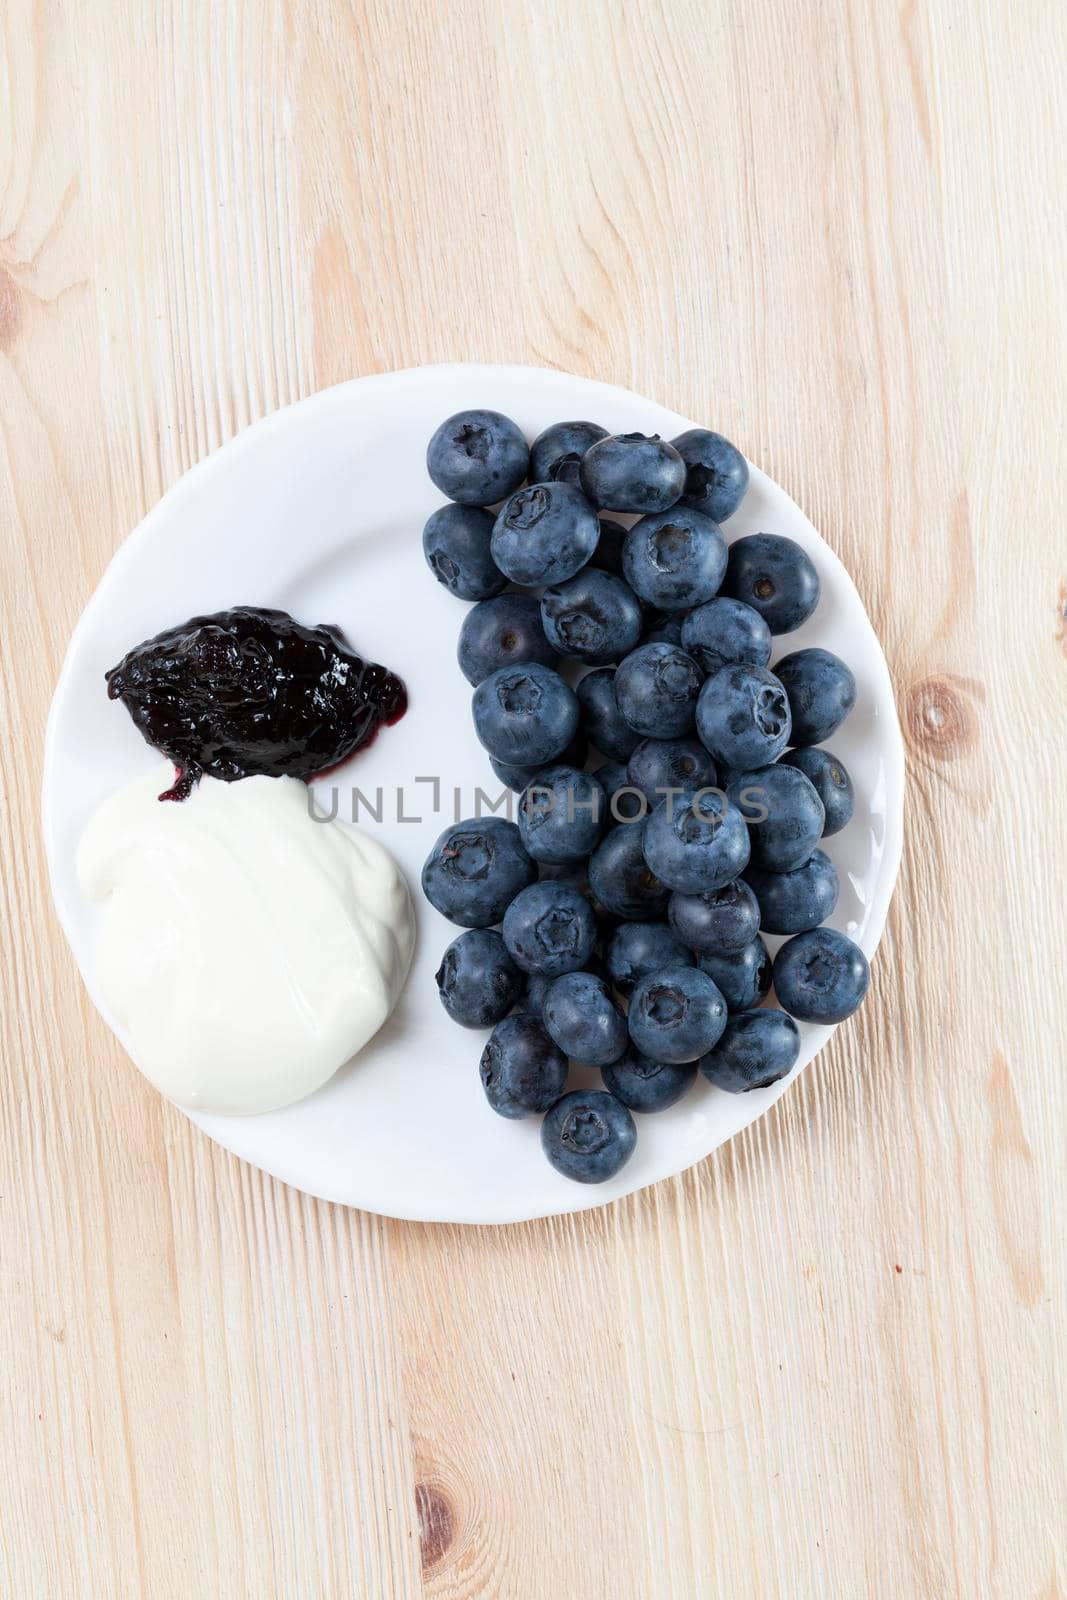 dessert of blueberries by avq